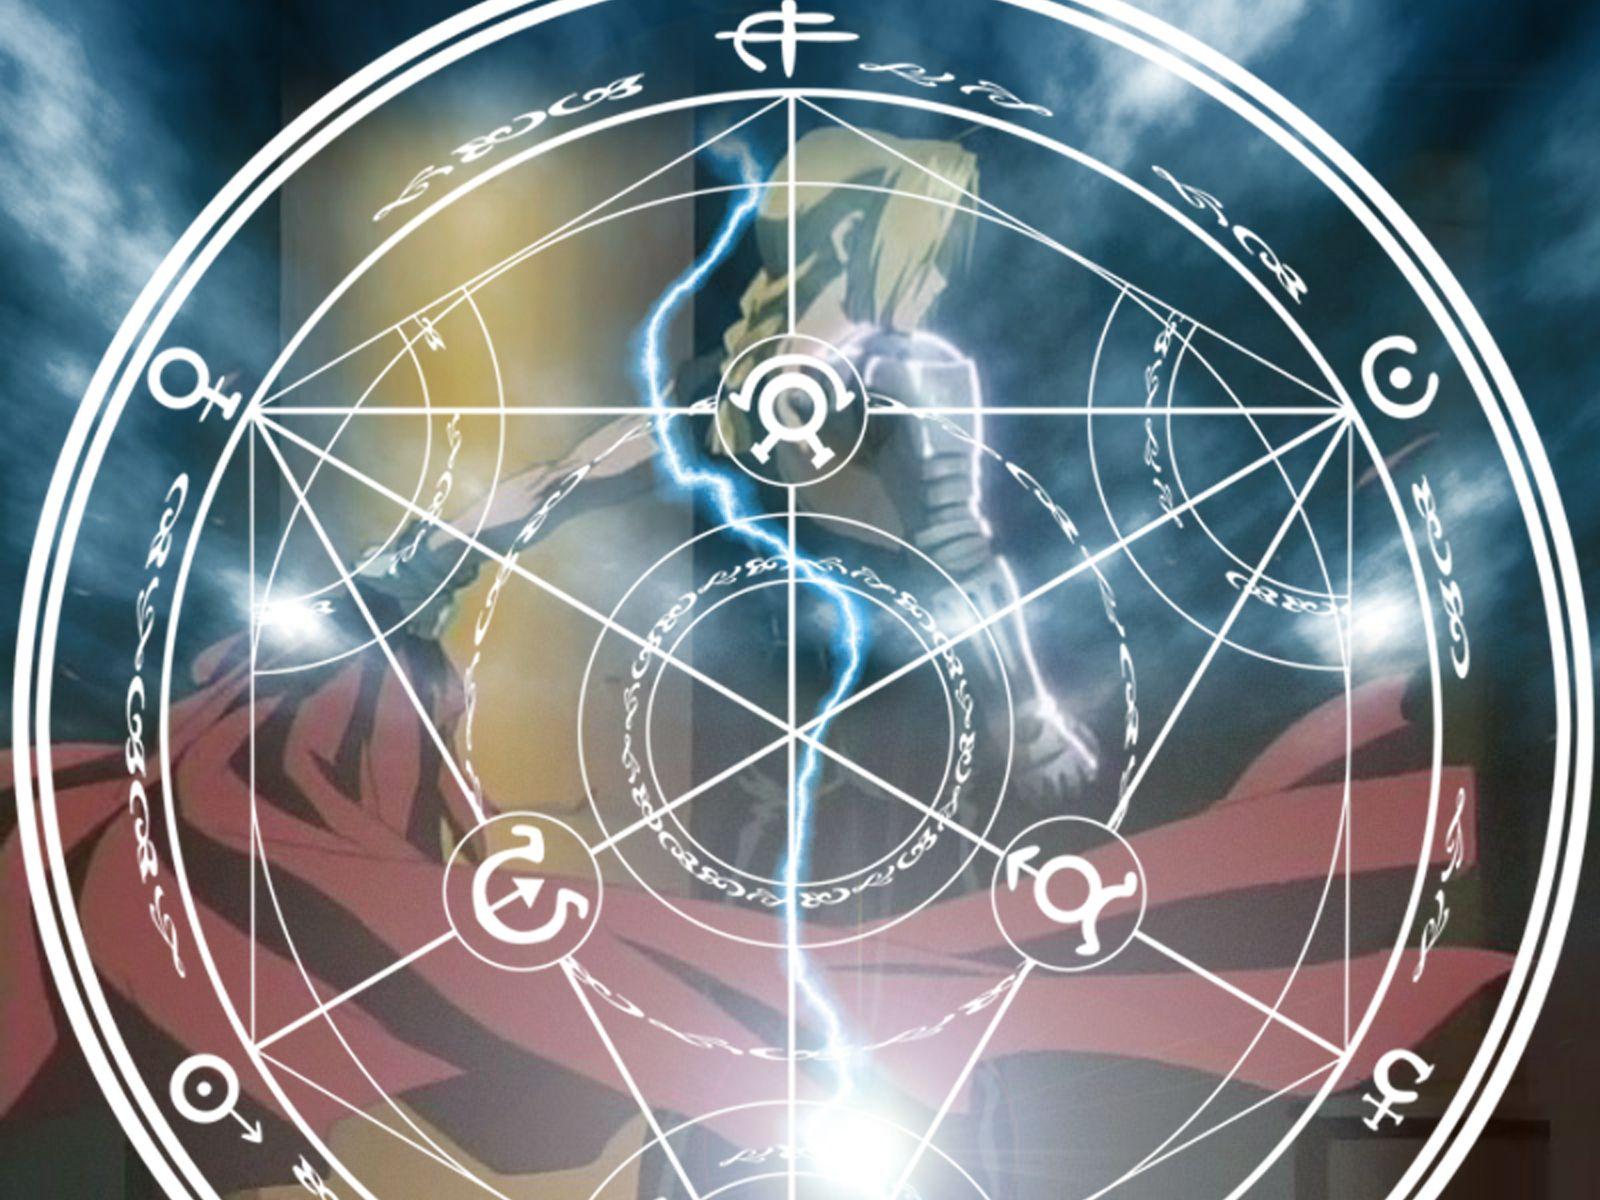 Fullmetal Alchemist Wallpaper: FMA 0